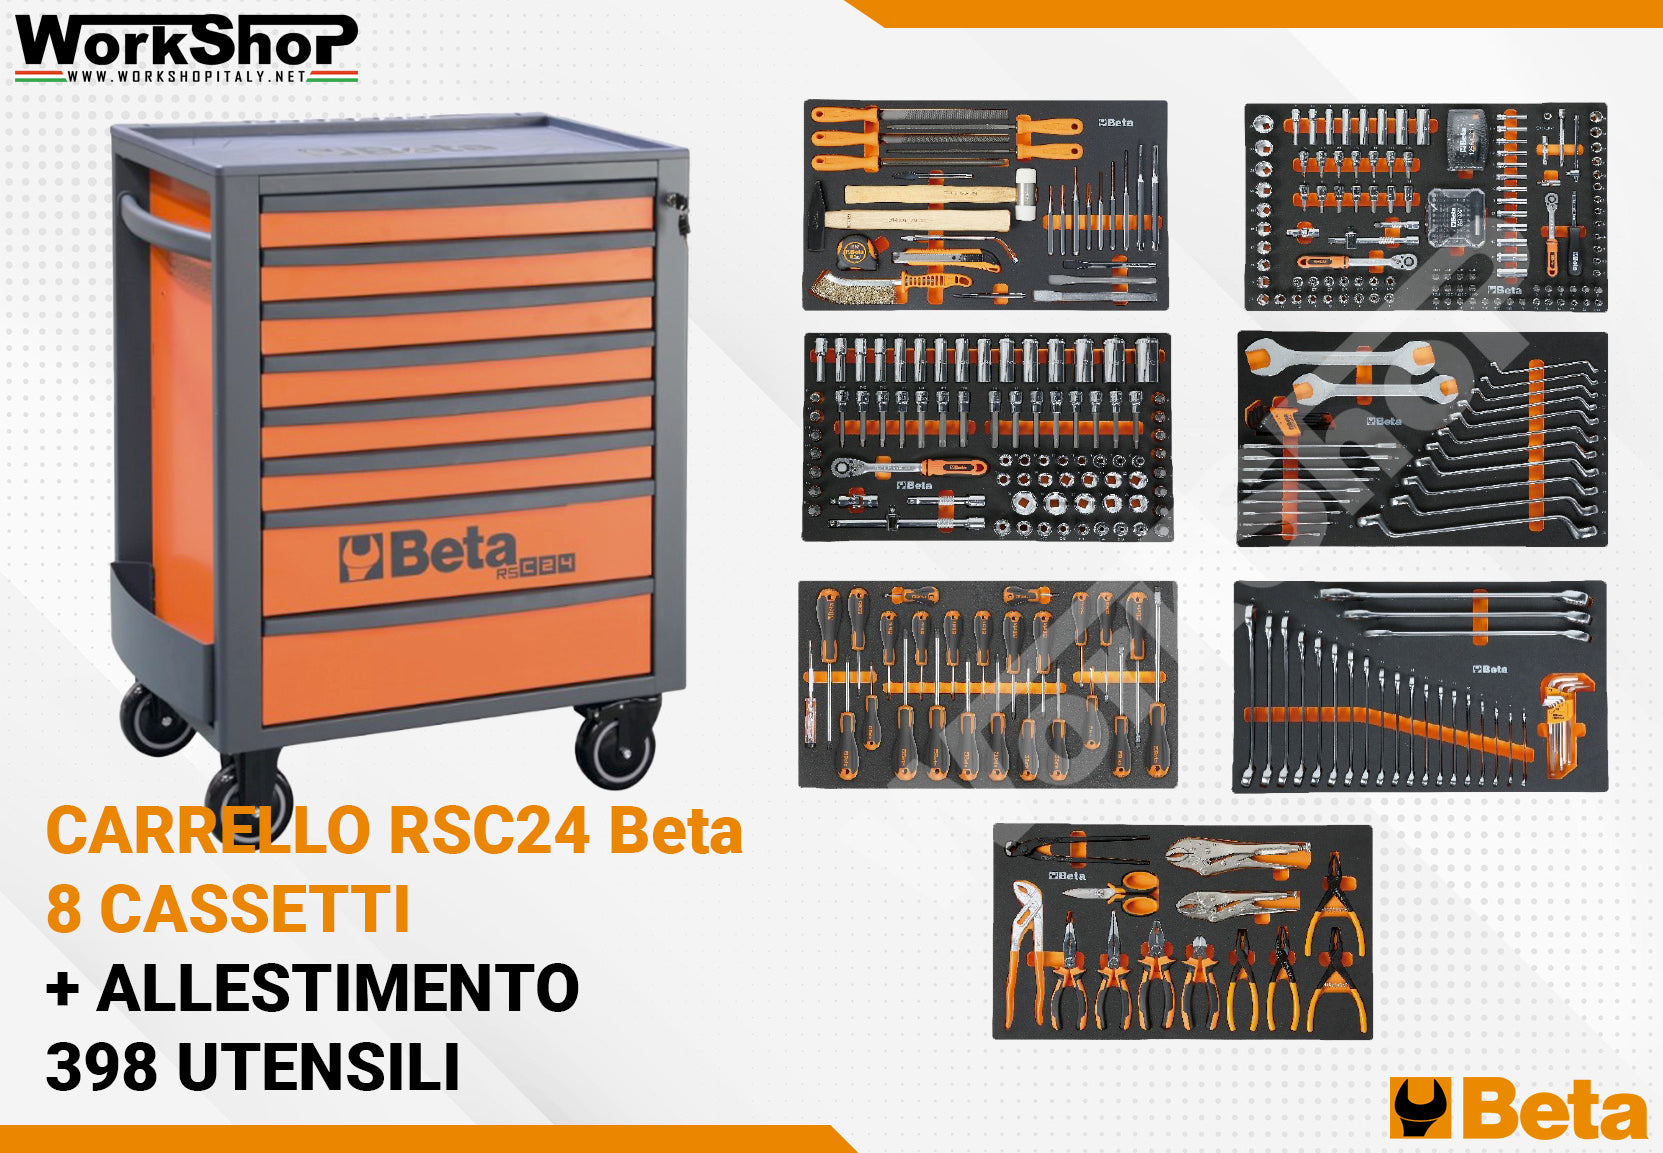 Carrello Beta RSC24 8 Cassetti + allestimento 398 utensili in termofor